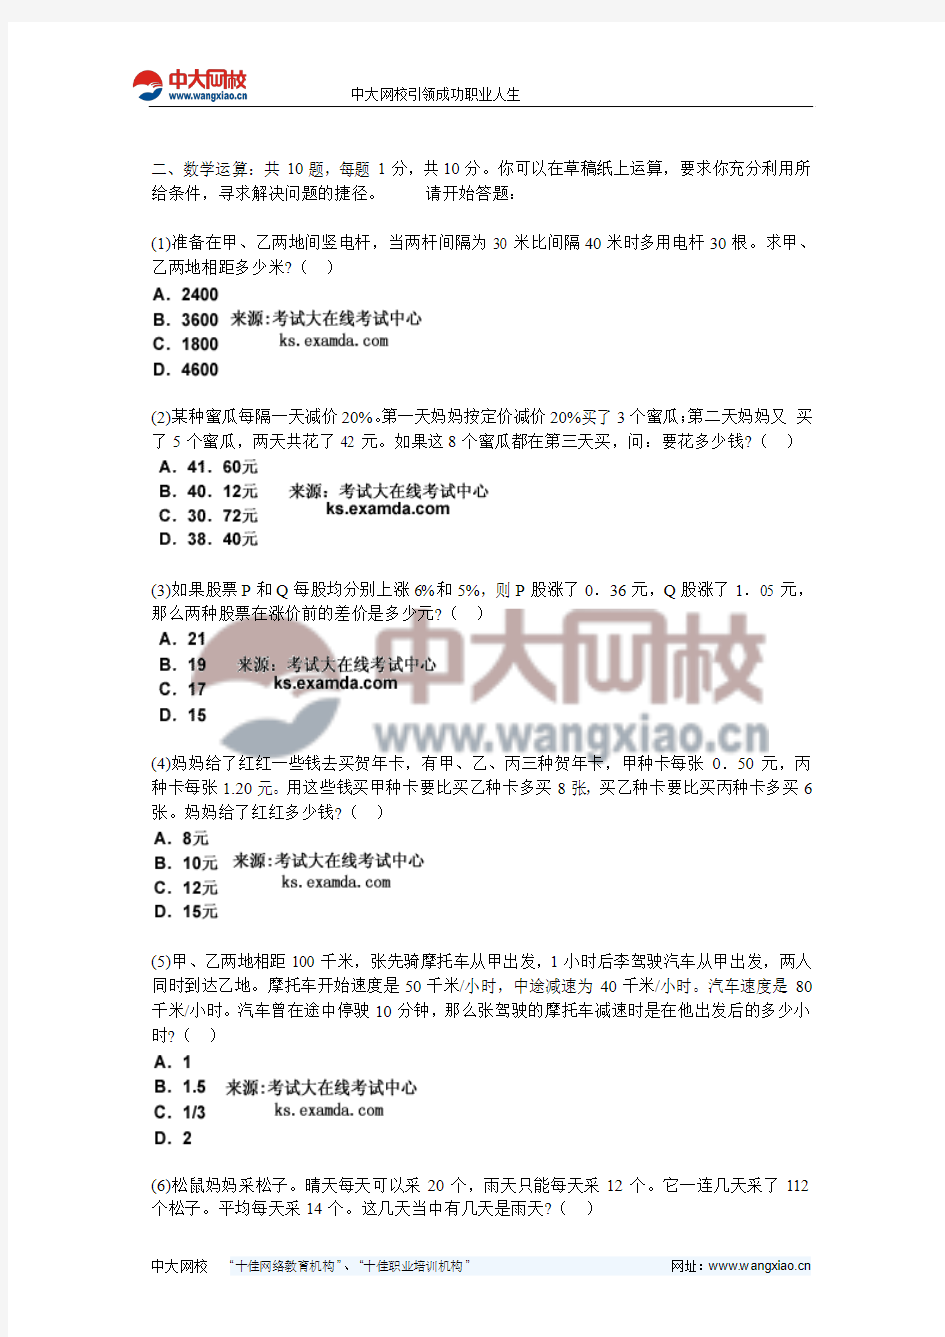 2011年广东省公务员考试《行测》标准预测试卷(2)-中大网校